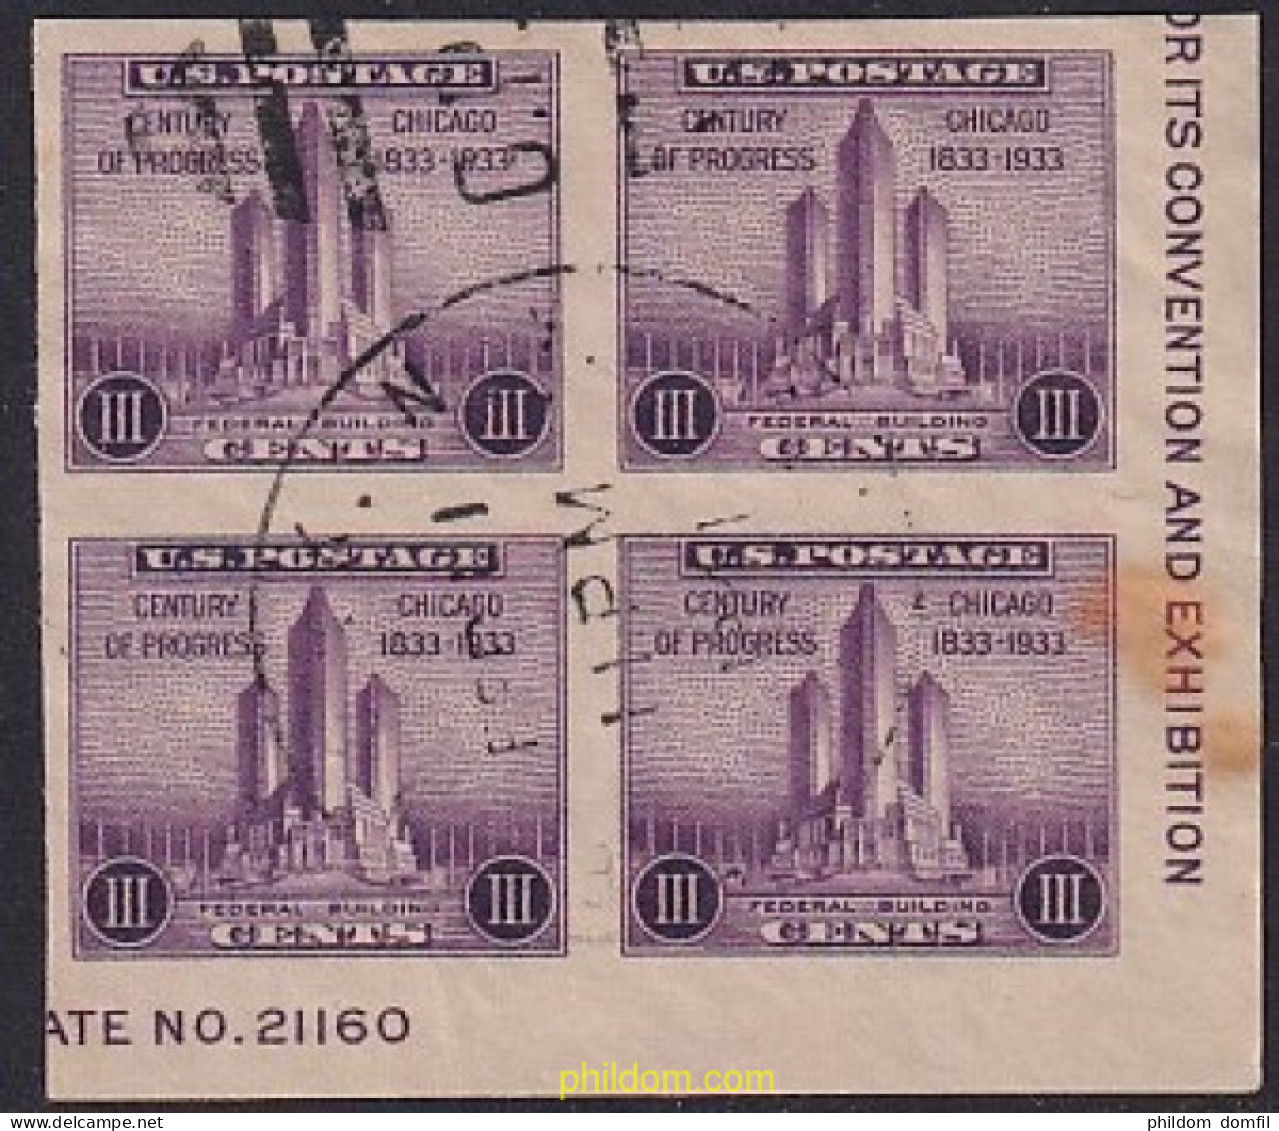 723935 USED ESTADOS UNIDOS 1933 EXPOSICION FILATELICA EN CHICAGO - UN SIGLO DE PROGRESO - Unused Stamps